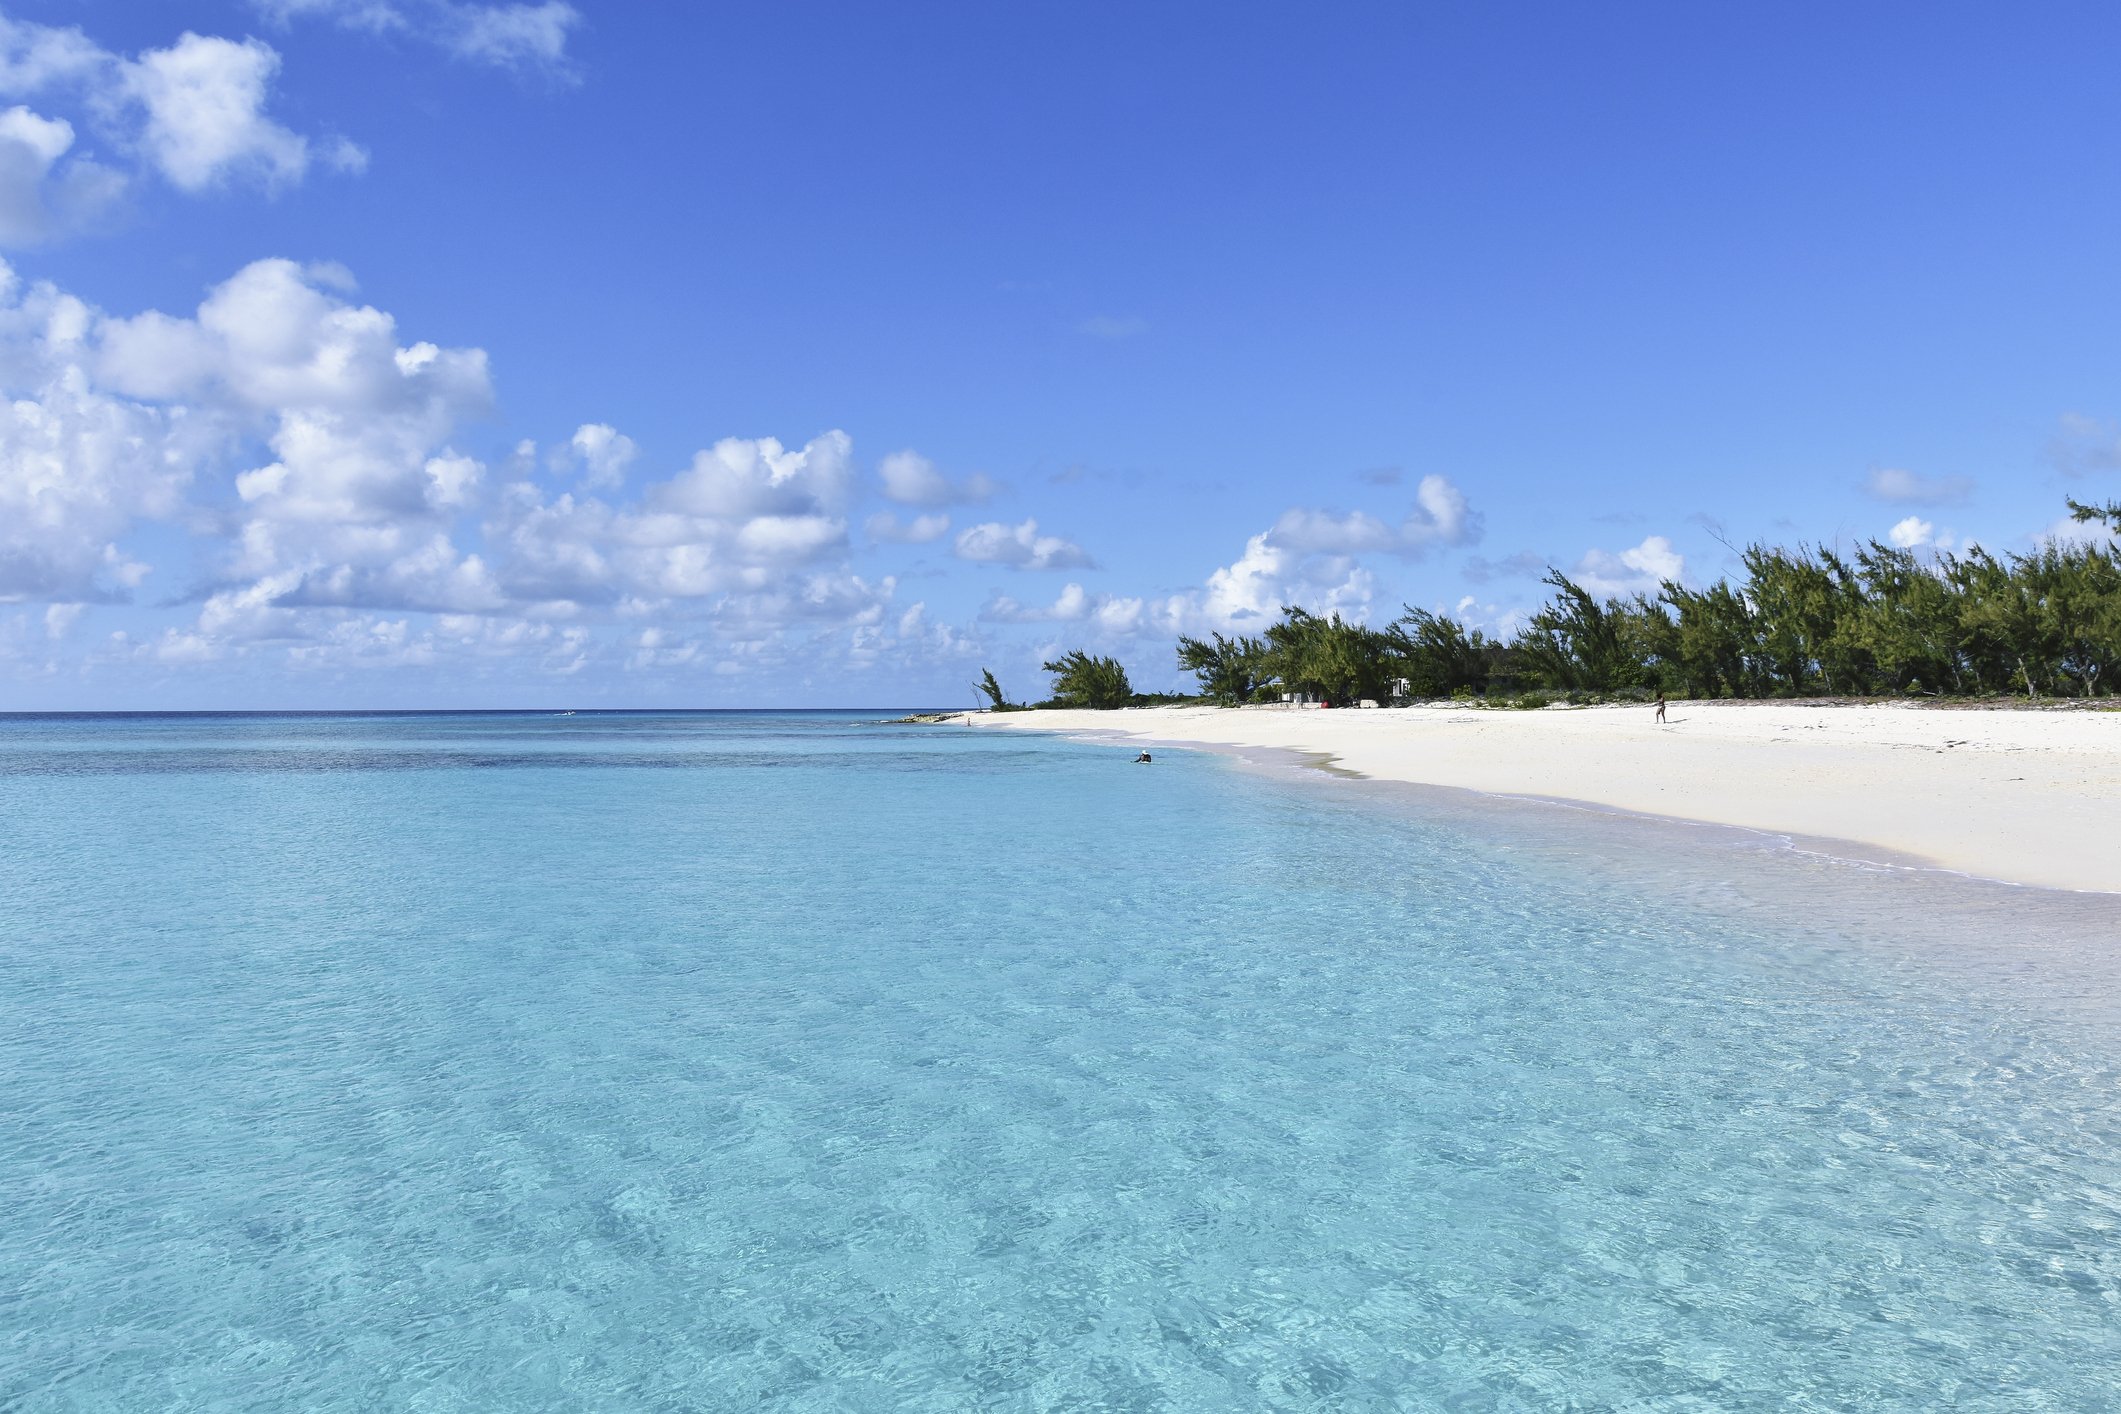 Idyllischer, ruhiger blauer Ozean und sonniger Strand, Grand Turk Island, Turks- und Caicosinseln I Quelle: Getty Images